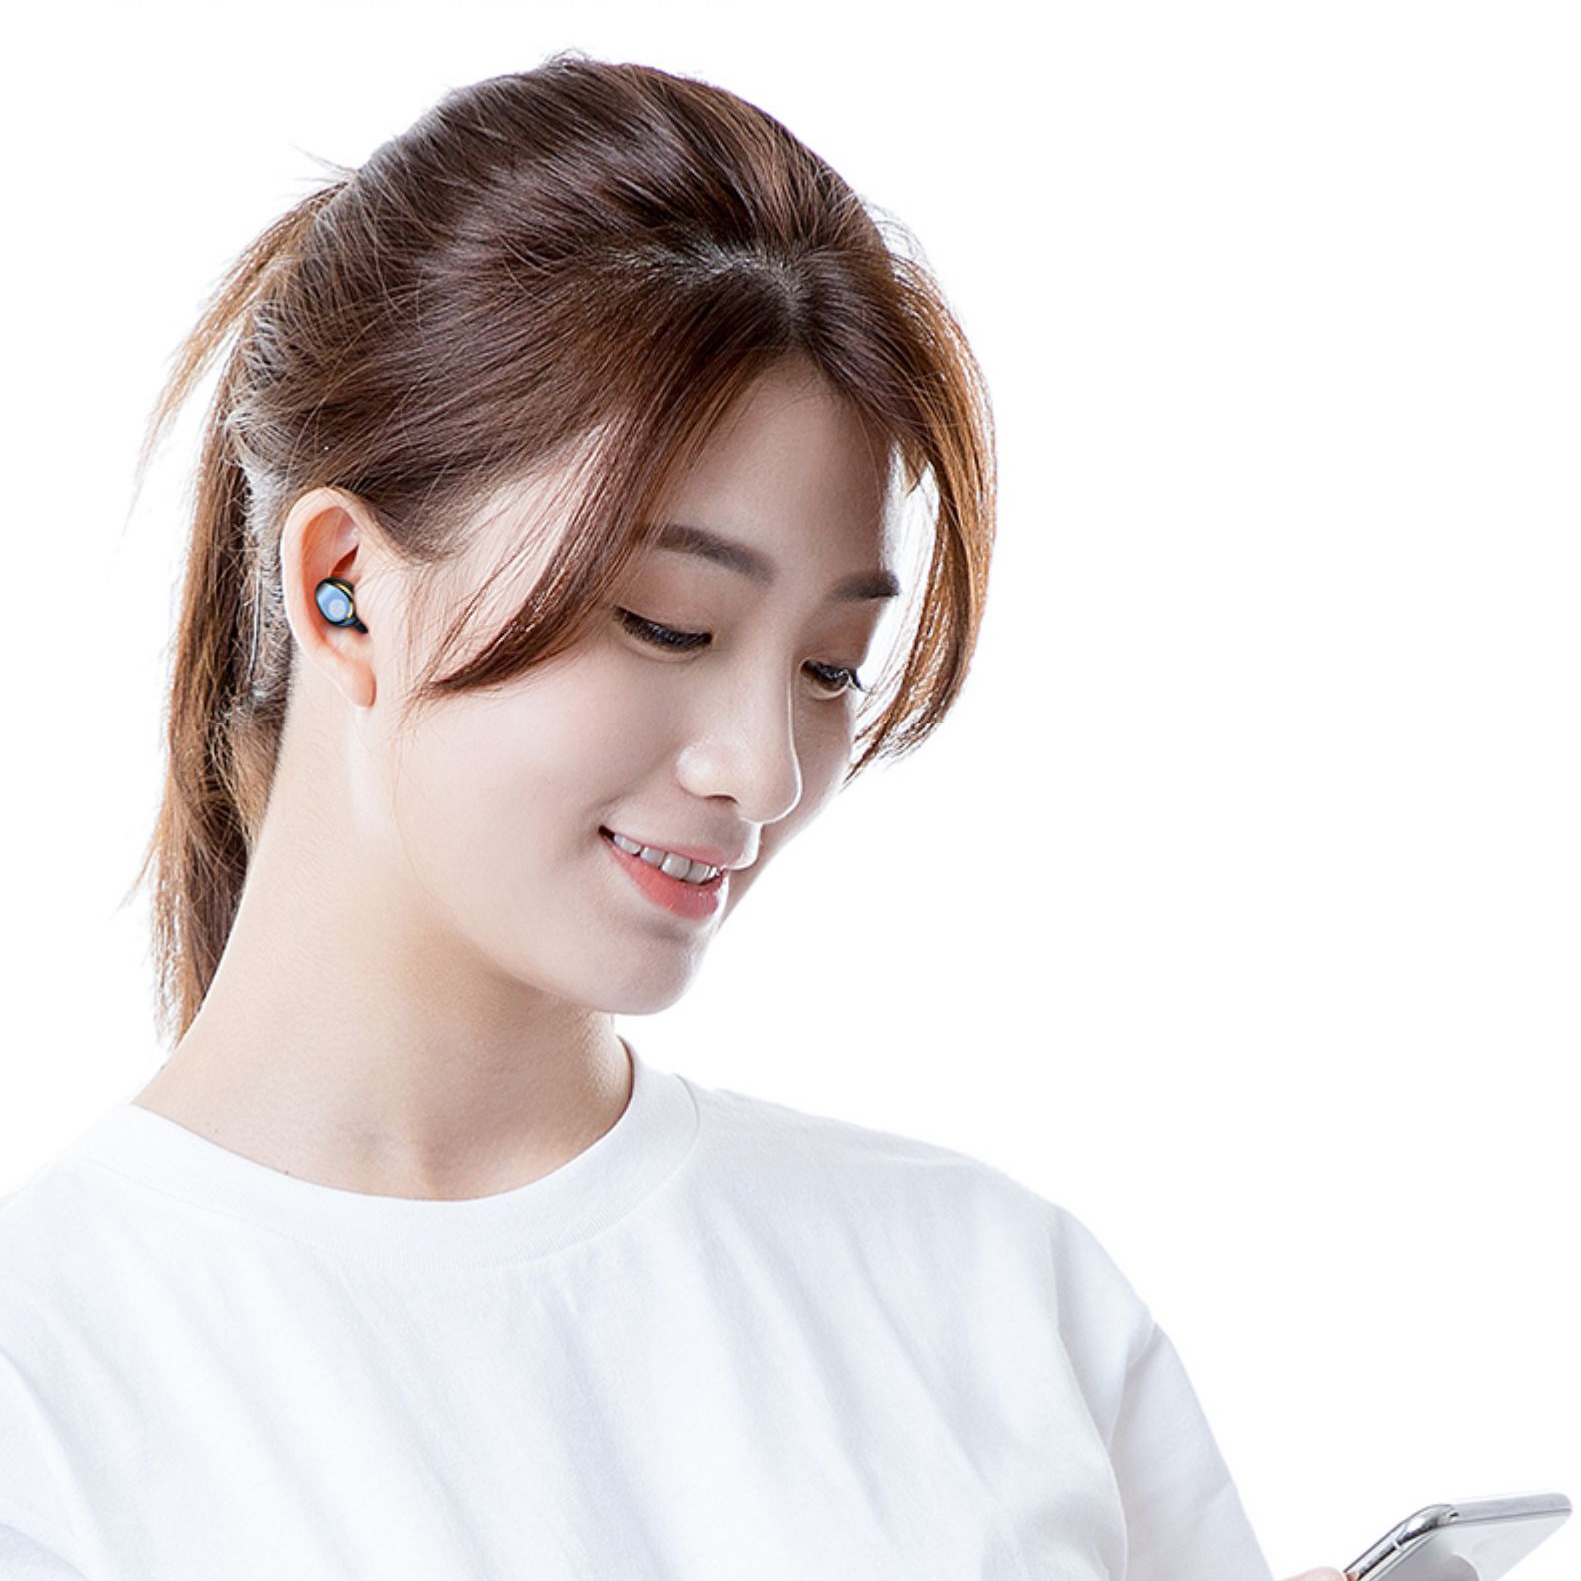 Tai nghe không dây 5.0 AMOI F9 Version 2021 cảm ứng bluetooth 5.0 âm thanh TWS siêu bass pin, có mic chống ồn đàm thoại HD call, tai nghe không dây gaming cho điện thoại iphone ios samsung android - Tai nghe bluetooth